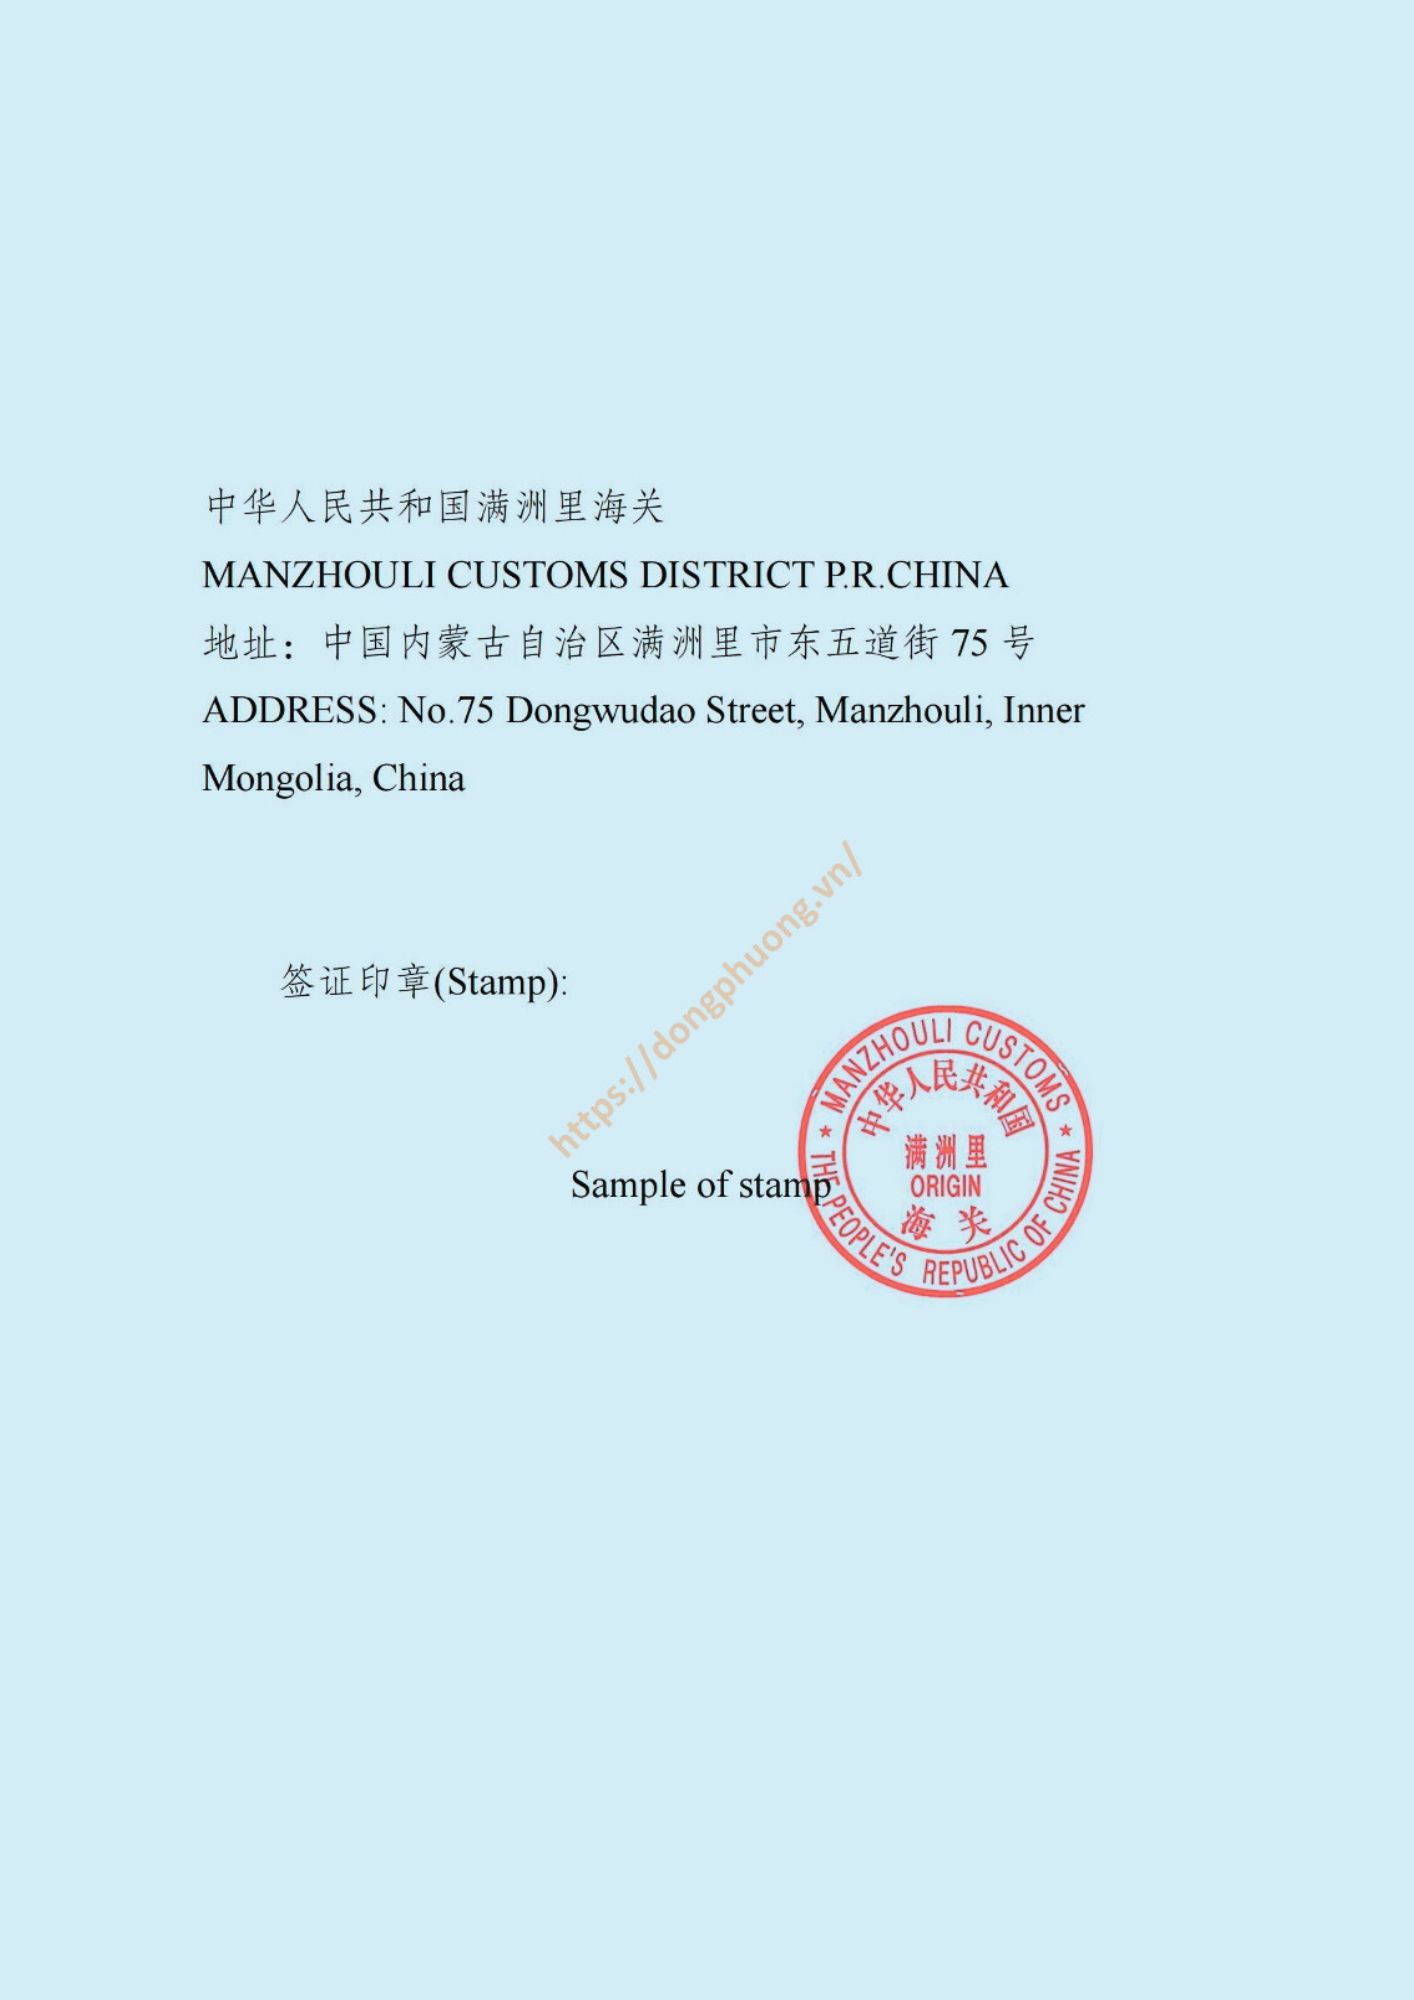 mẫu dấu và chữ ký form E 2024 Manzhouli customs